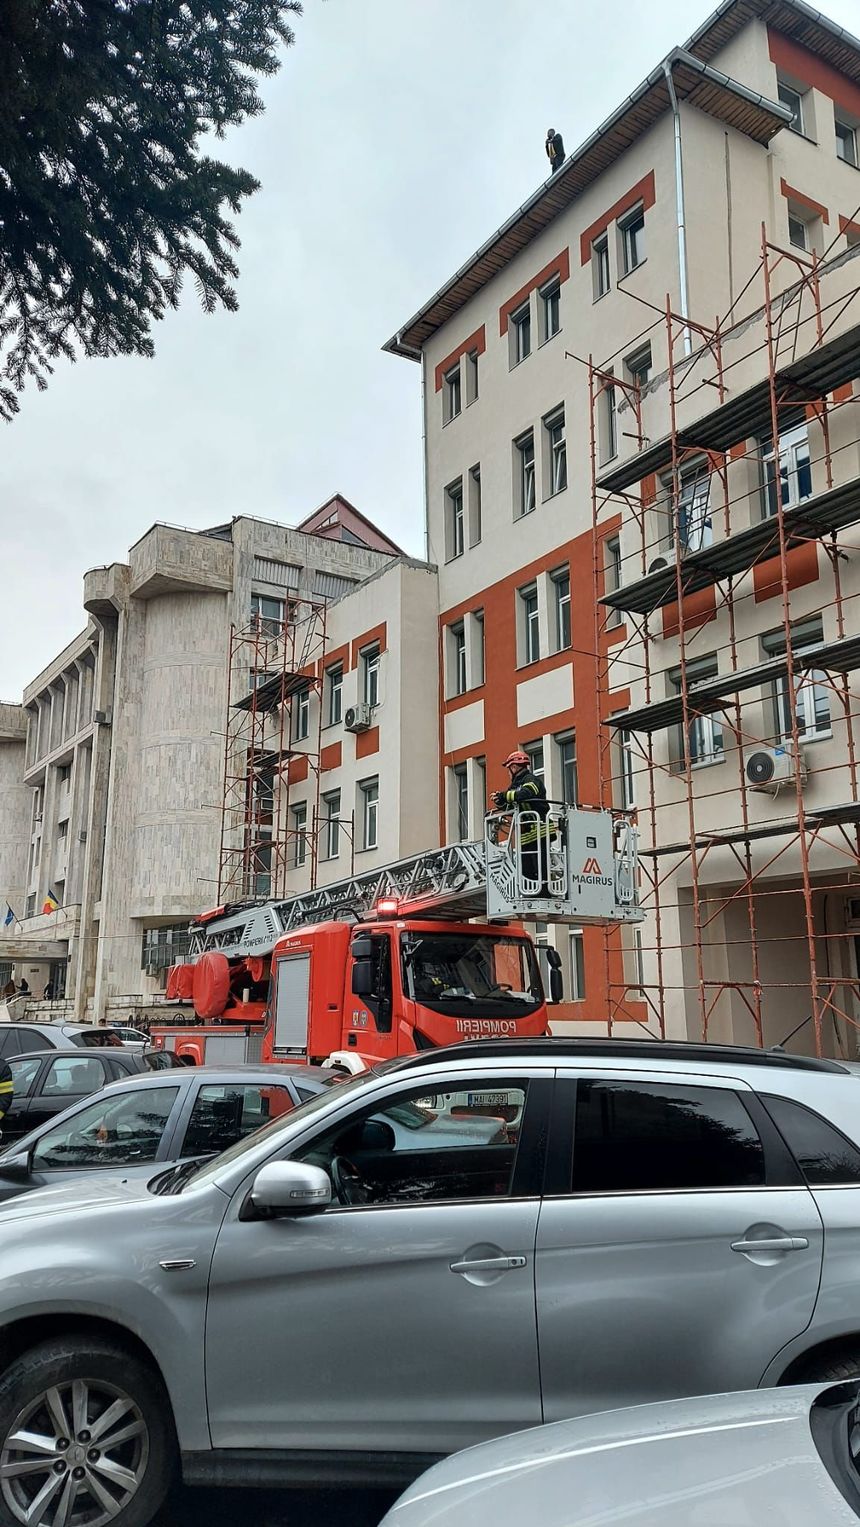 UPDATE - Un bărbat s-a urcat pe clădirea Spitalului de Urgenţă din Târgu Jiu şi ameninţă că se aruncă/ Pompieri, echipaje medicale şi poliţişti, mobilizaţi/ Bărbatul, convins să coboare - FOTO, VIDEO